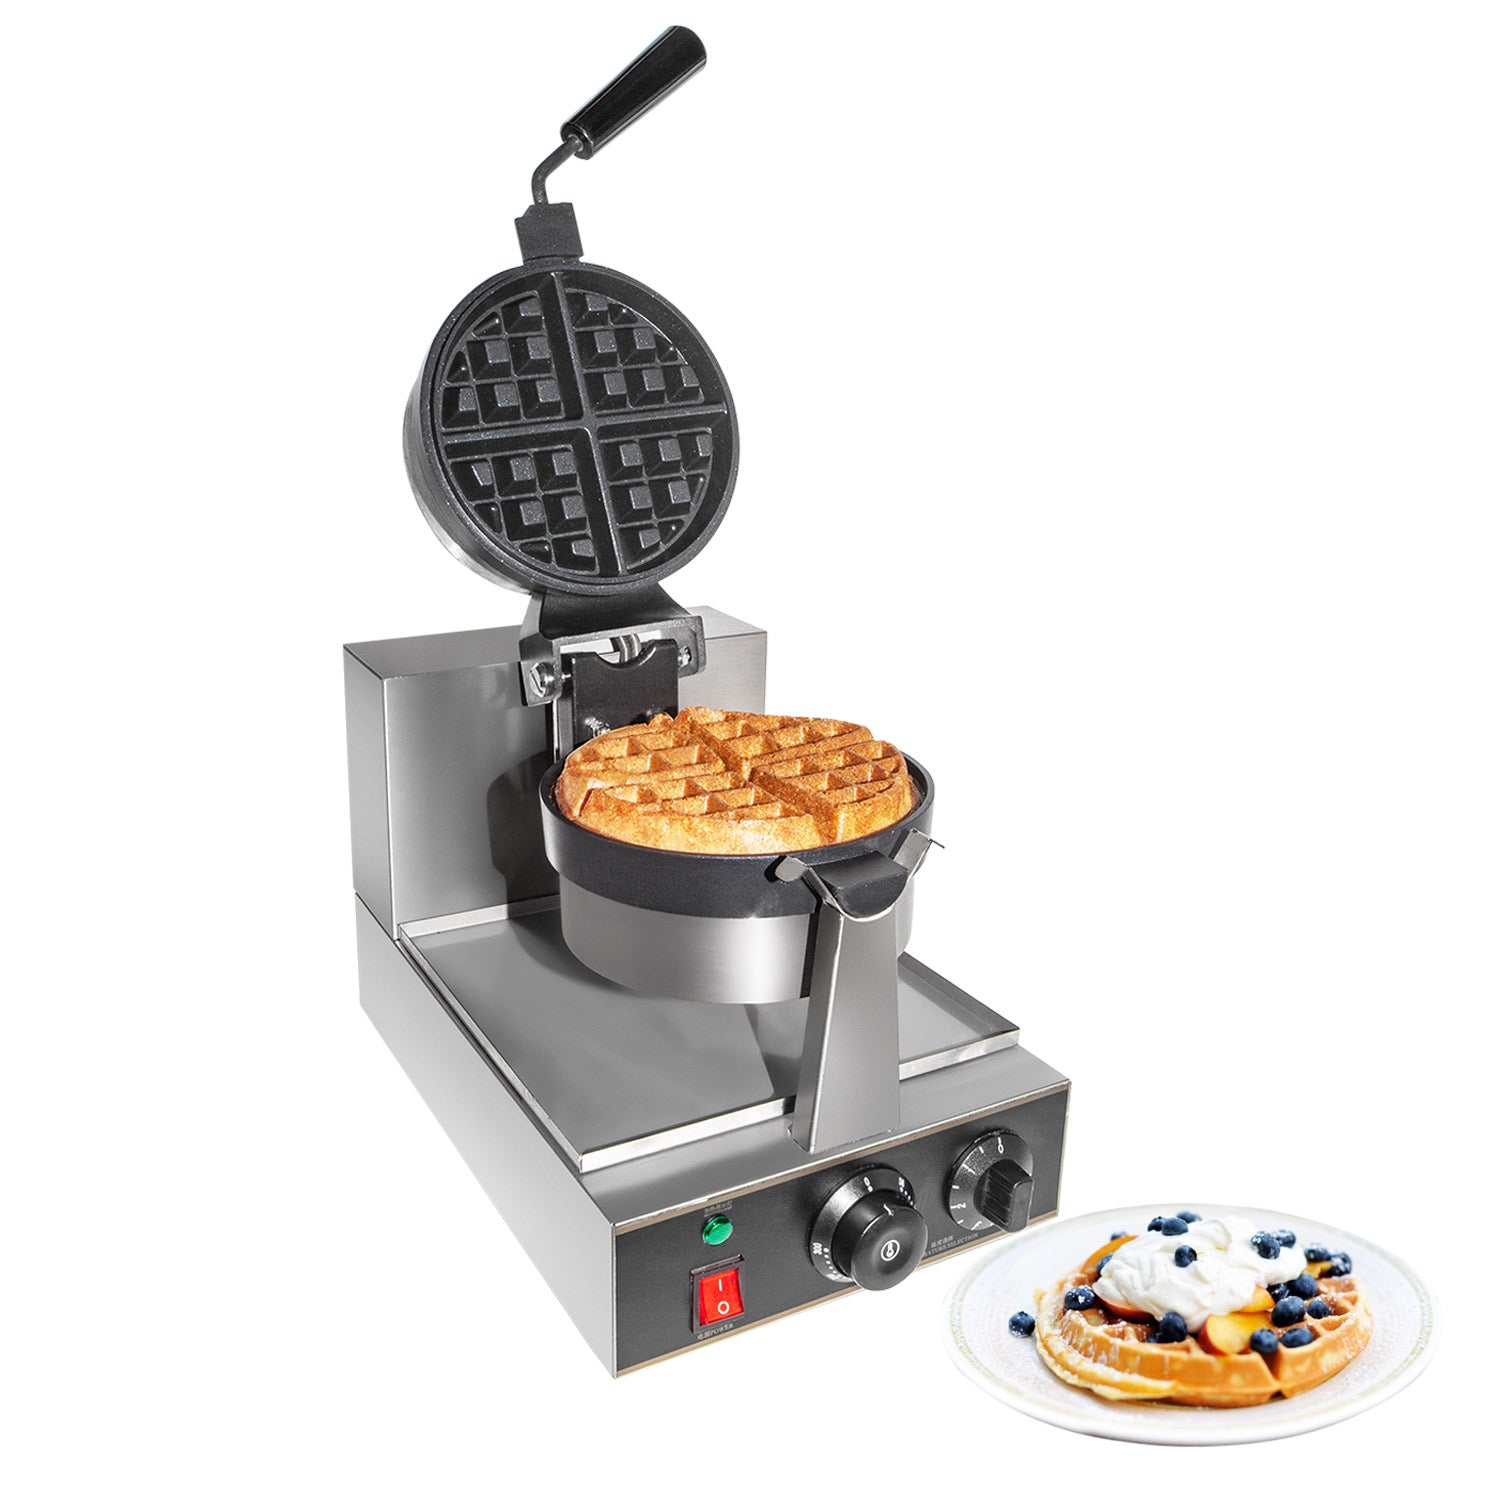 http://ald.kitchen/cdn/shop/products/belgian-waffle-maker-1-1_de9e1d85-05d6-4441-900a-5912df1e6a97.jpg?v=1598426152